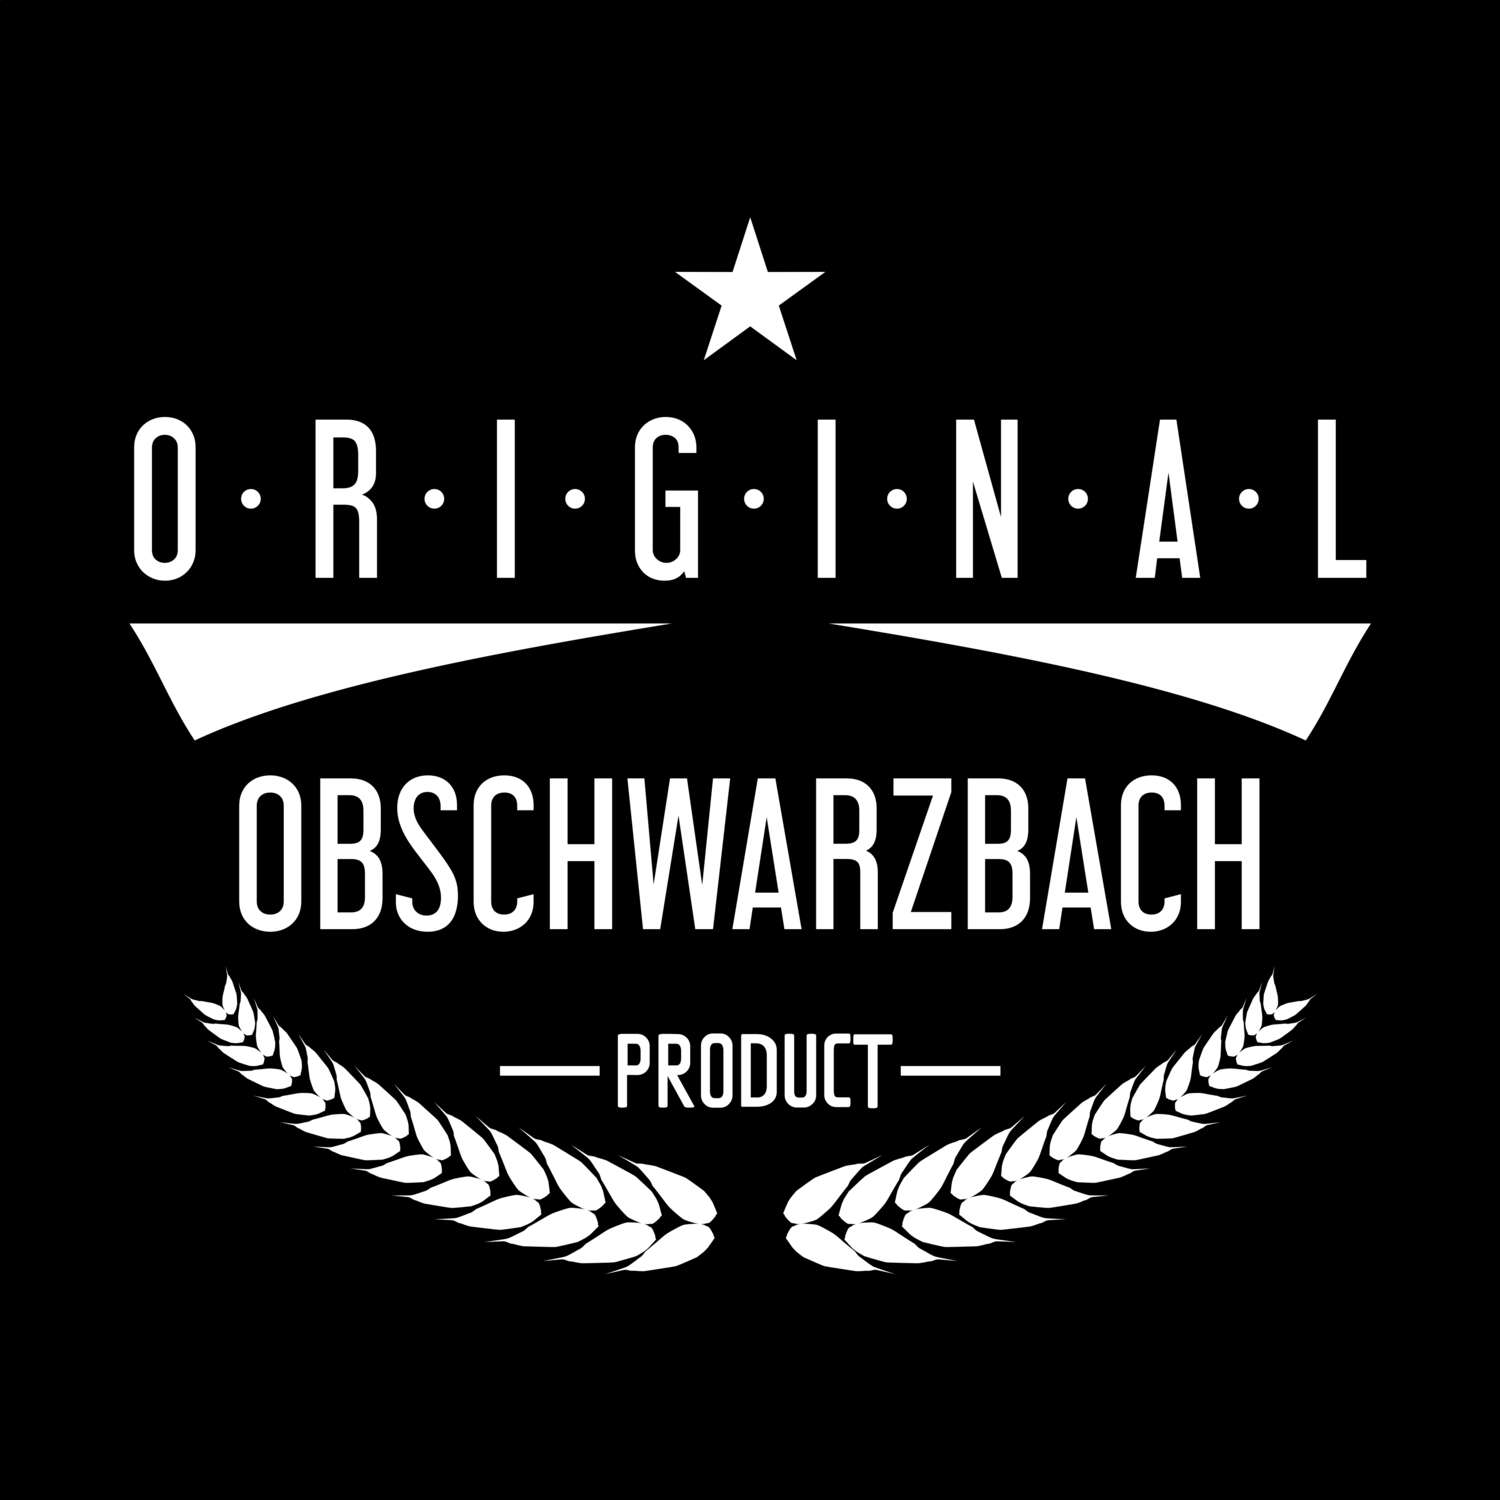 Obschwarzbach T-Shirt »Original Product«